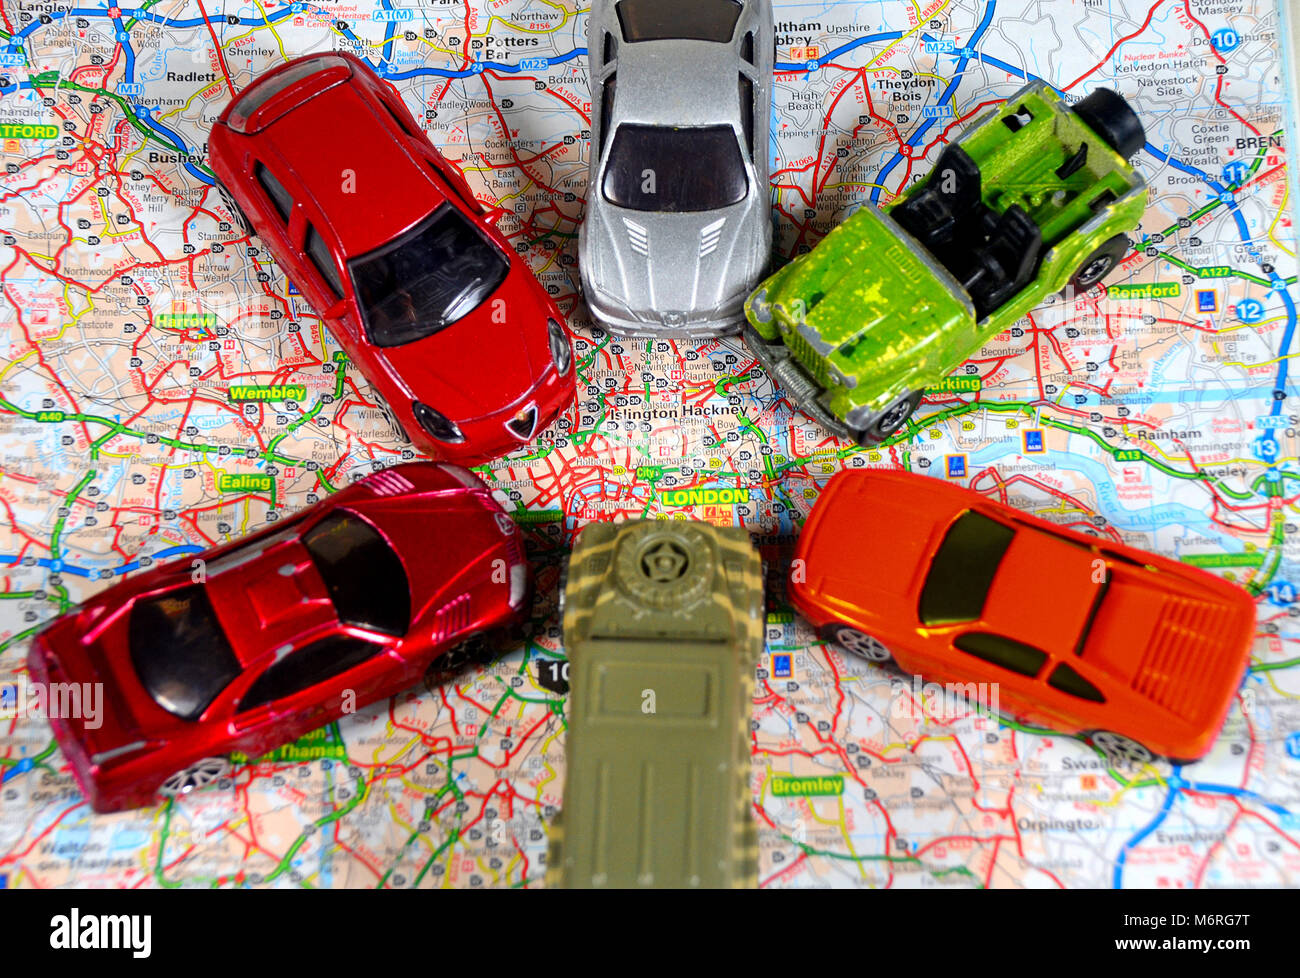 Concetto di traffico che entra Londra da tutte le direzioni - utilizzo di automobili giocattolo e una mappa stradale della Gran Bretagna. Foto Stock